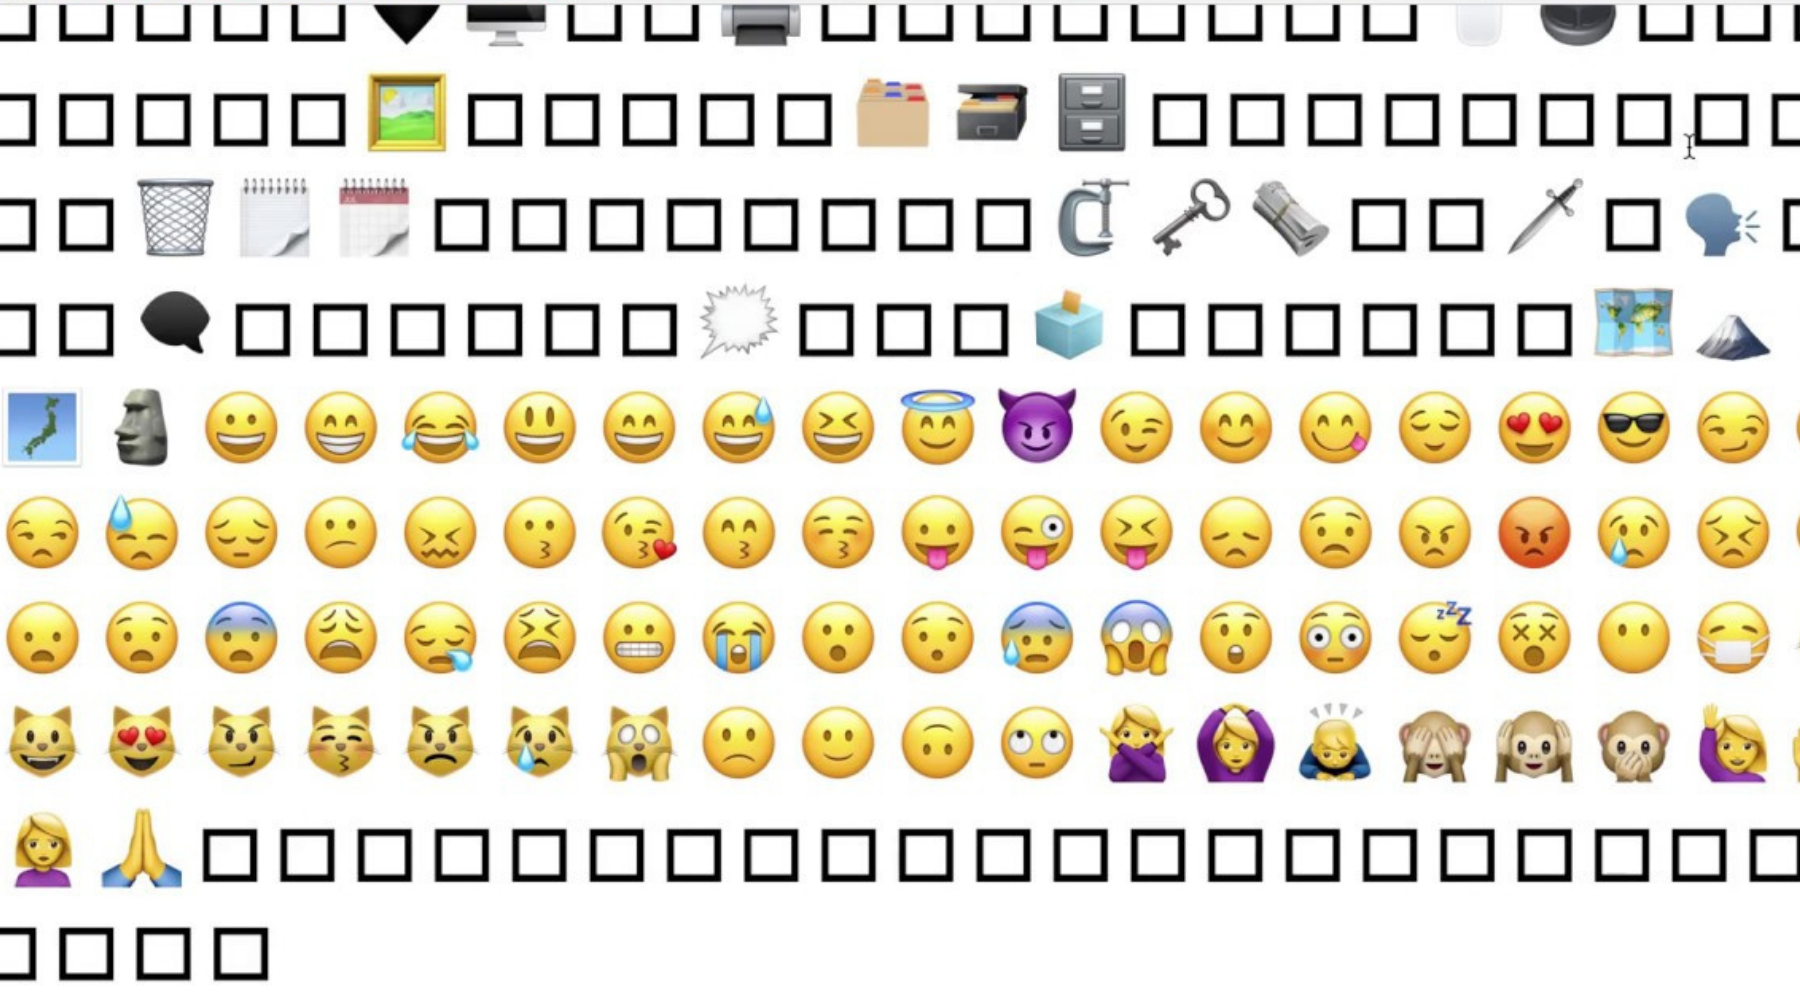 Emoji symbols. Смайлики на клавиатуре. Набор символов для смайликов. Символы смайлов на клавиатуре. Символы вместо смайликов.